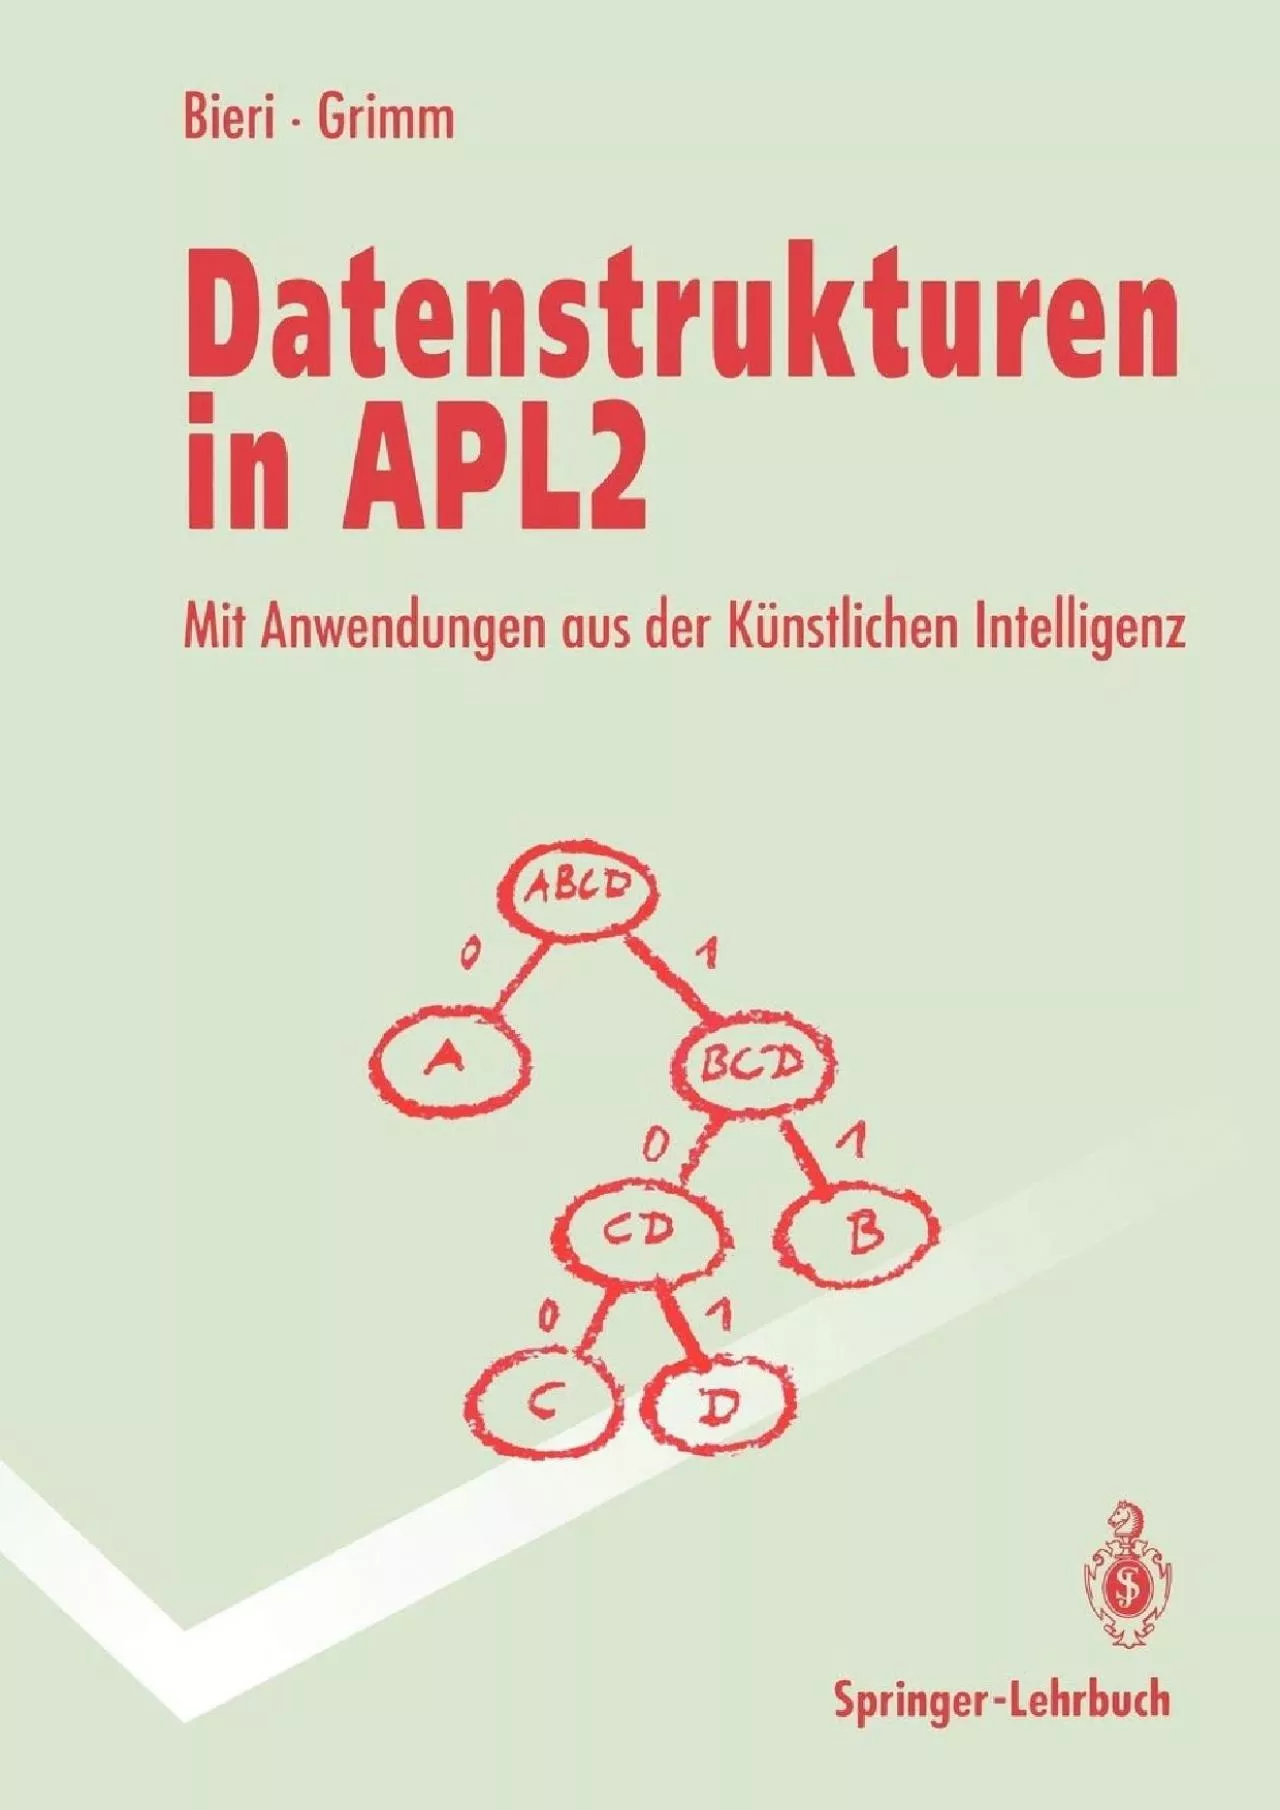 [READ]-Datenstrukturen in APL2: Mit Anwendungen aus der künstlichen Intelligenz (Springer-Lehrbuch)